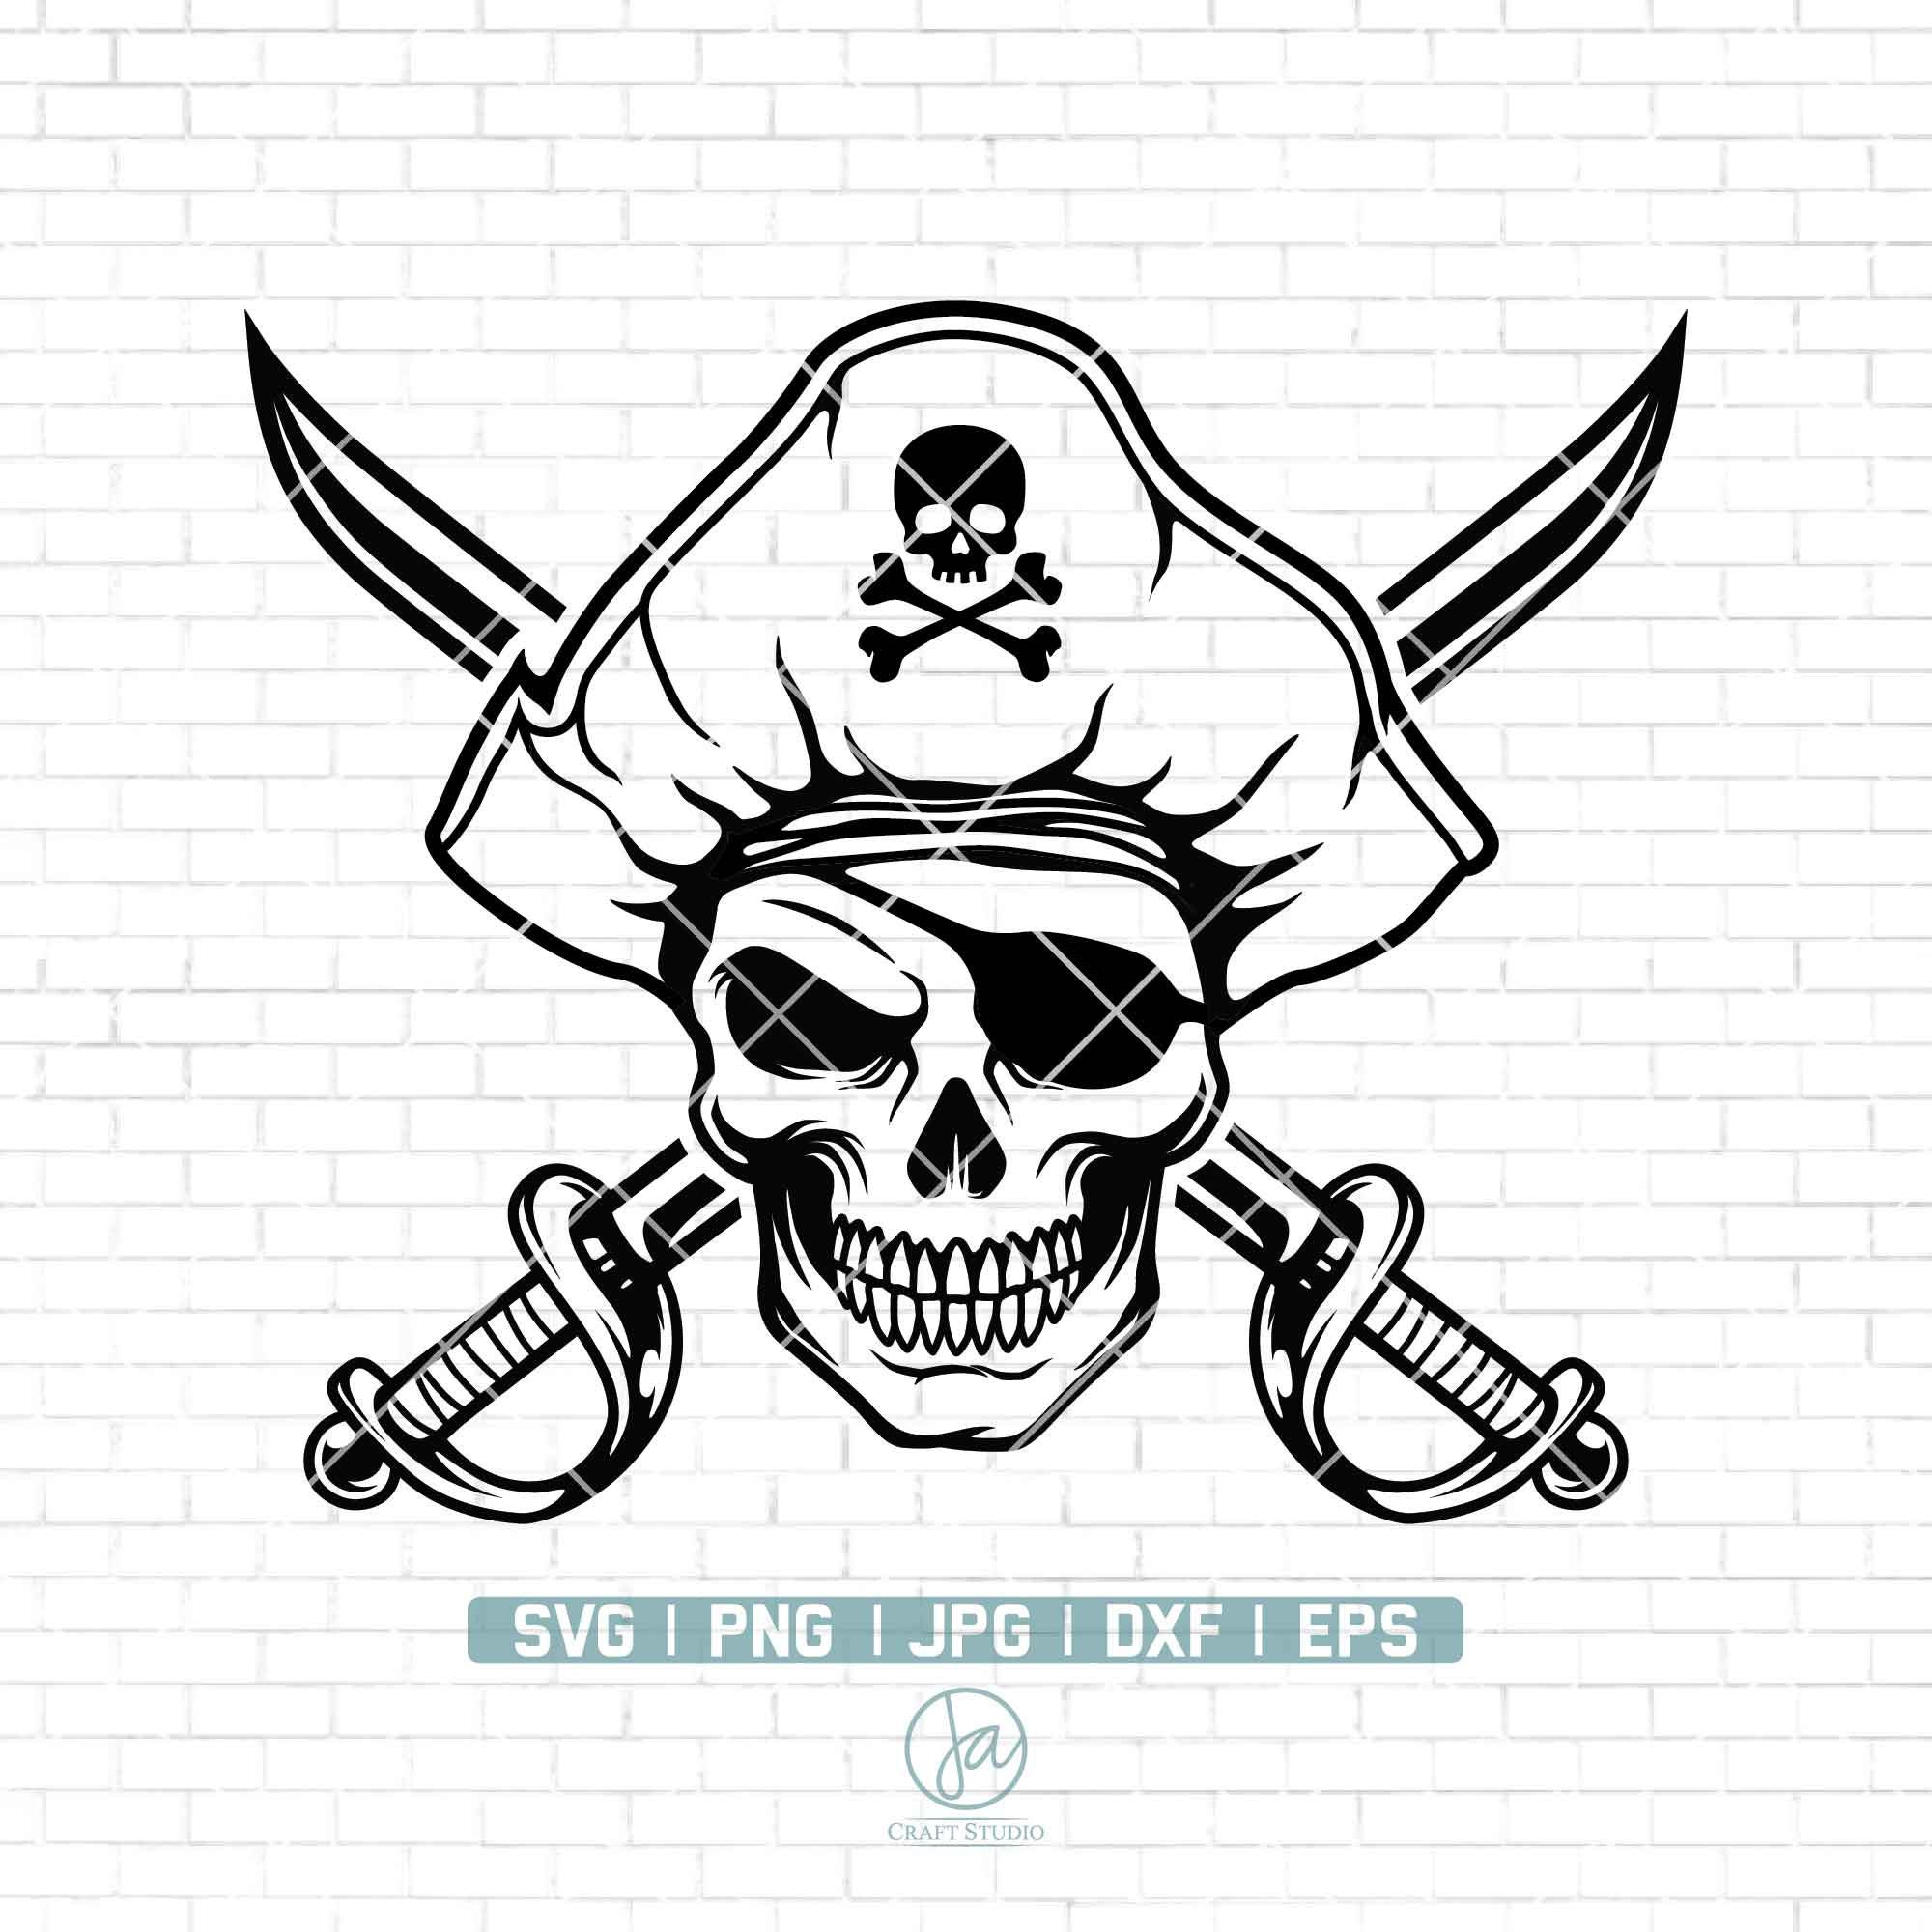 Pirate SVG, Pirate SVG, Pirate Team SVG, Pirate School Mascot, Pirate ...